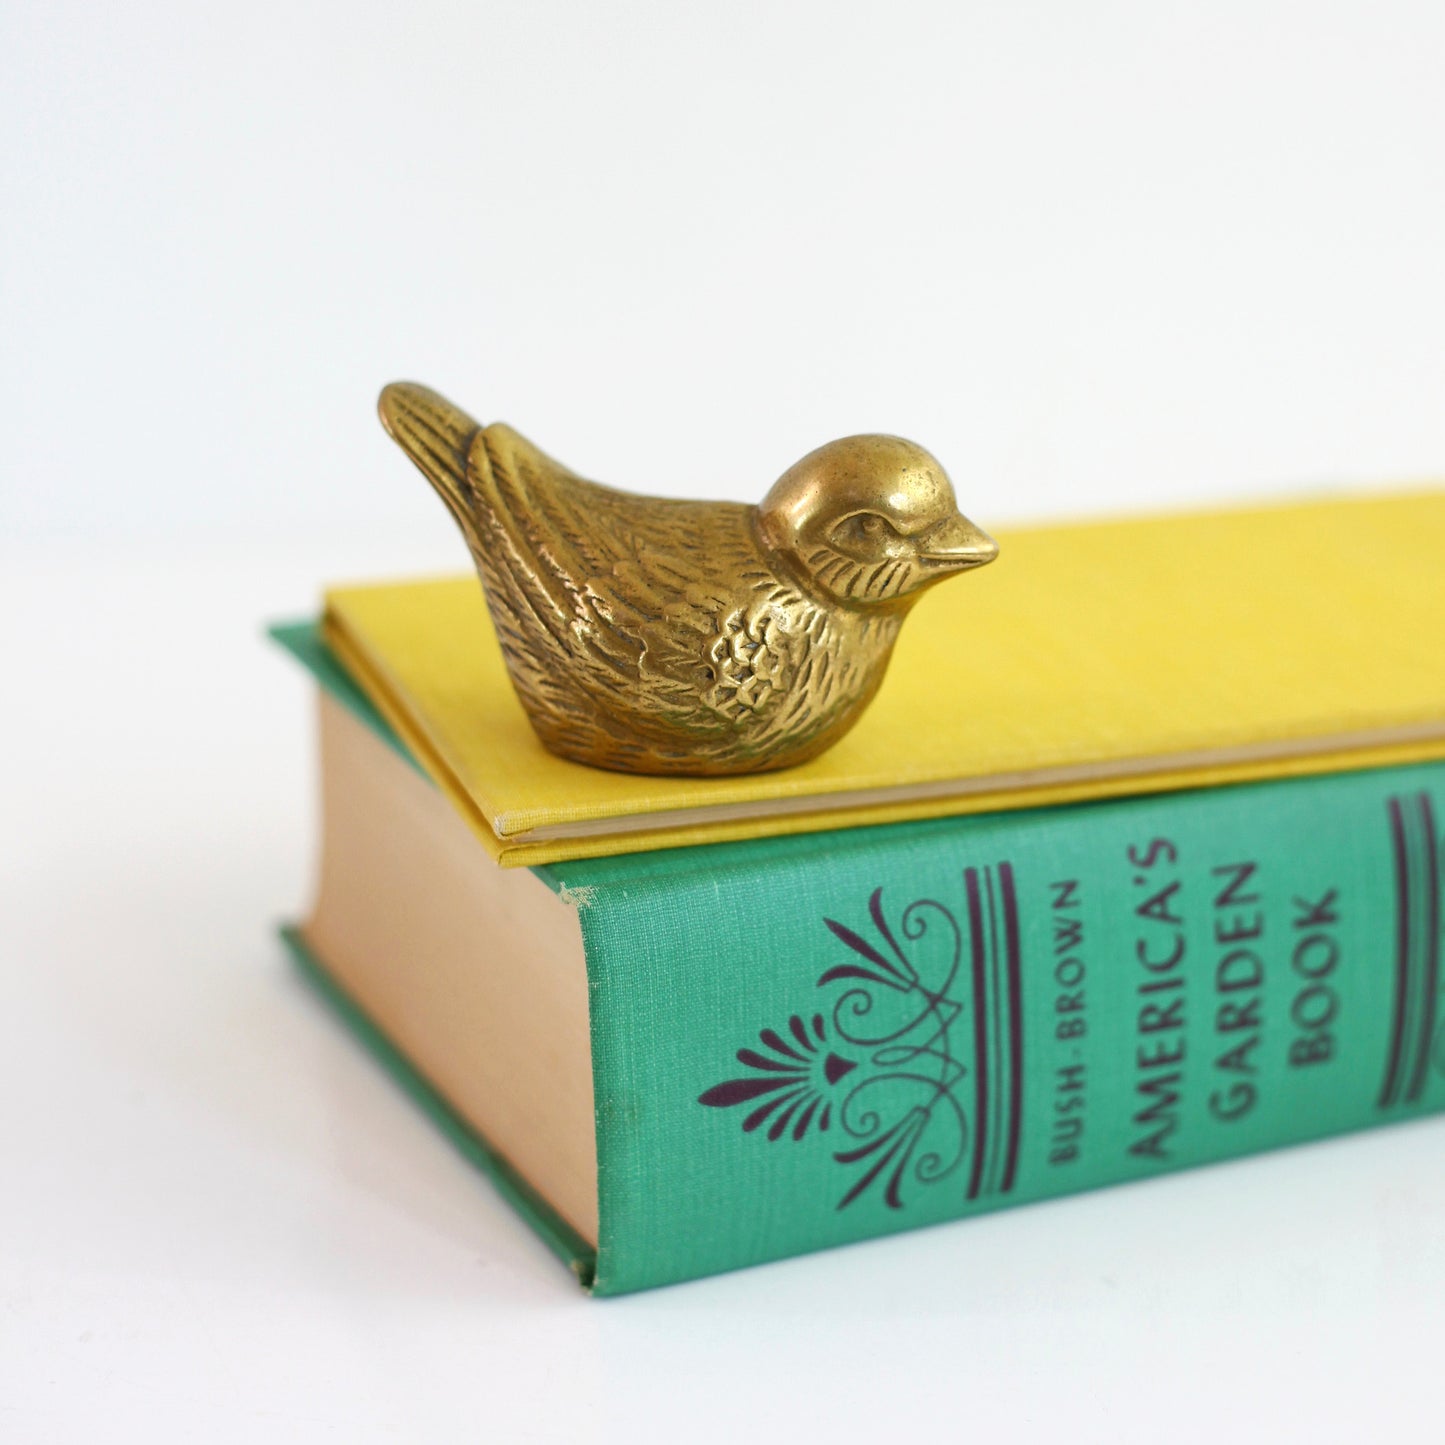 SOLD - Vintage Brass Bird Figurine